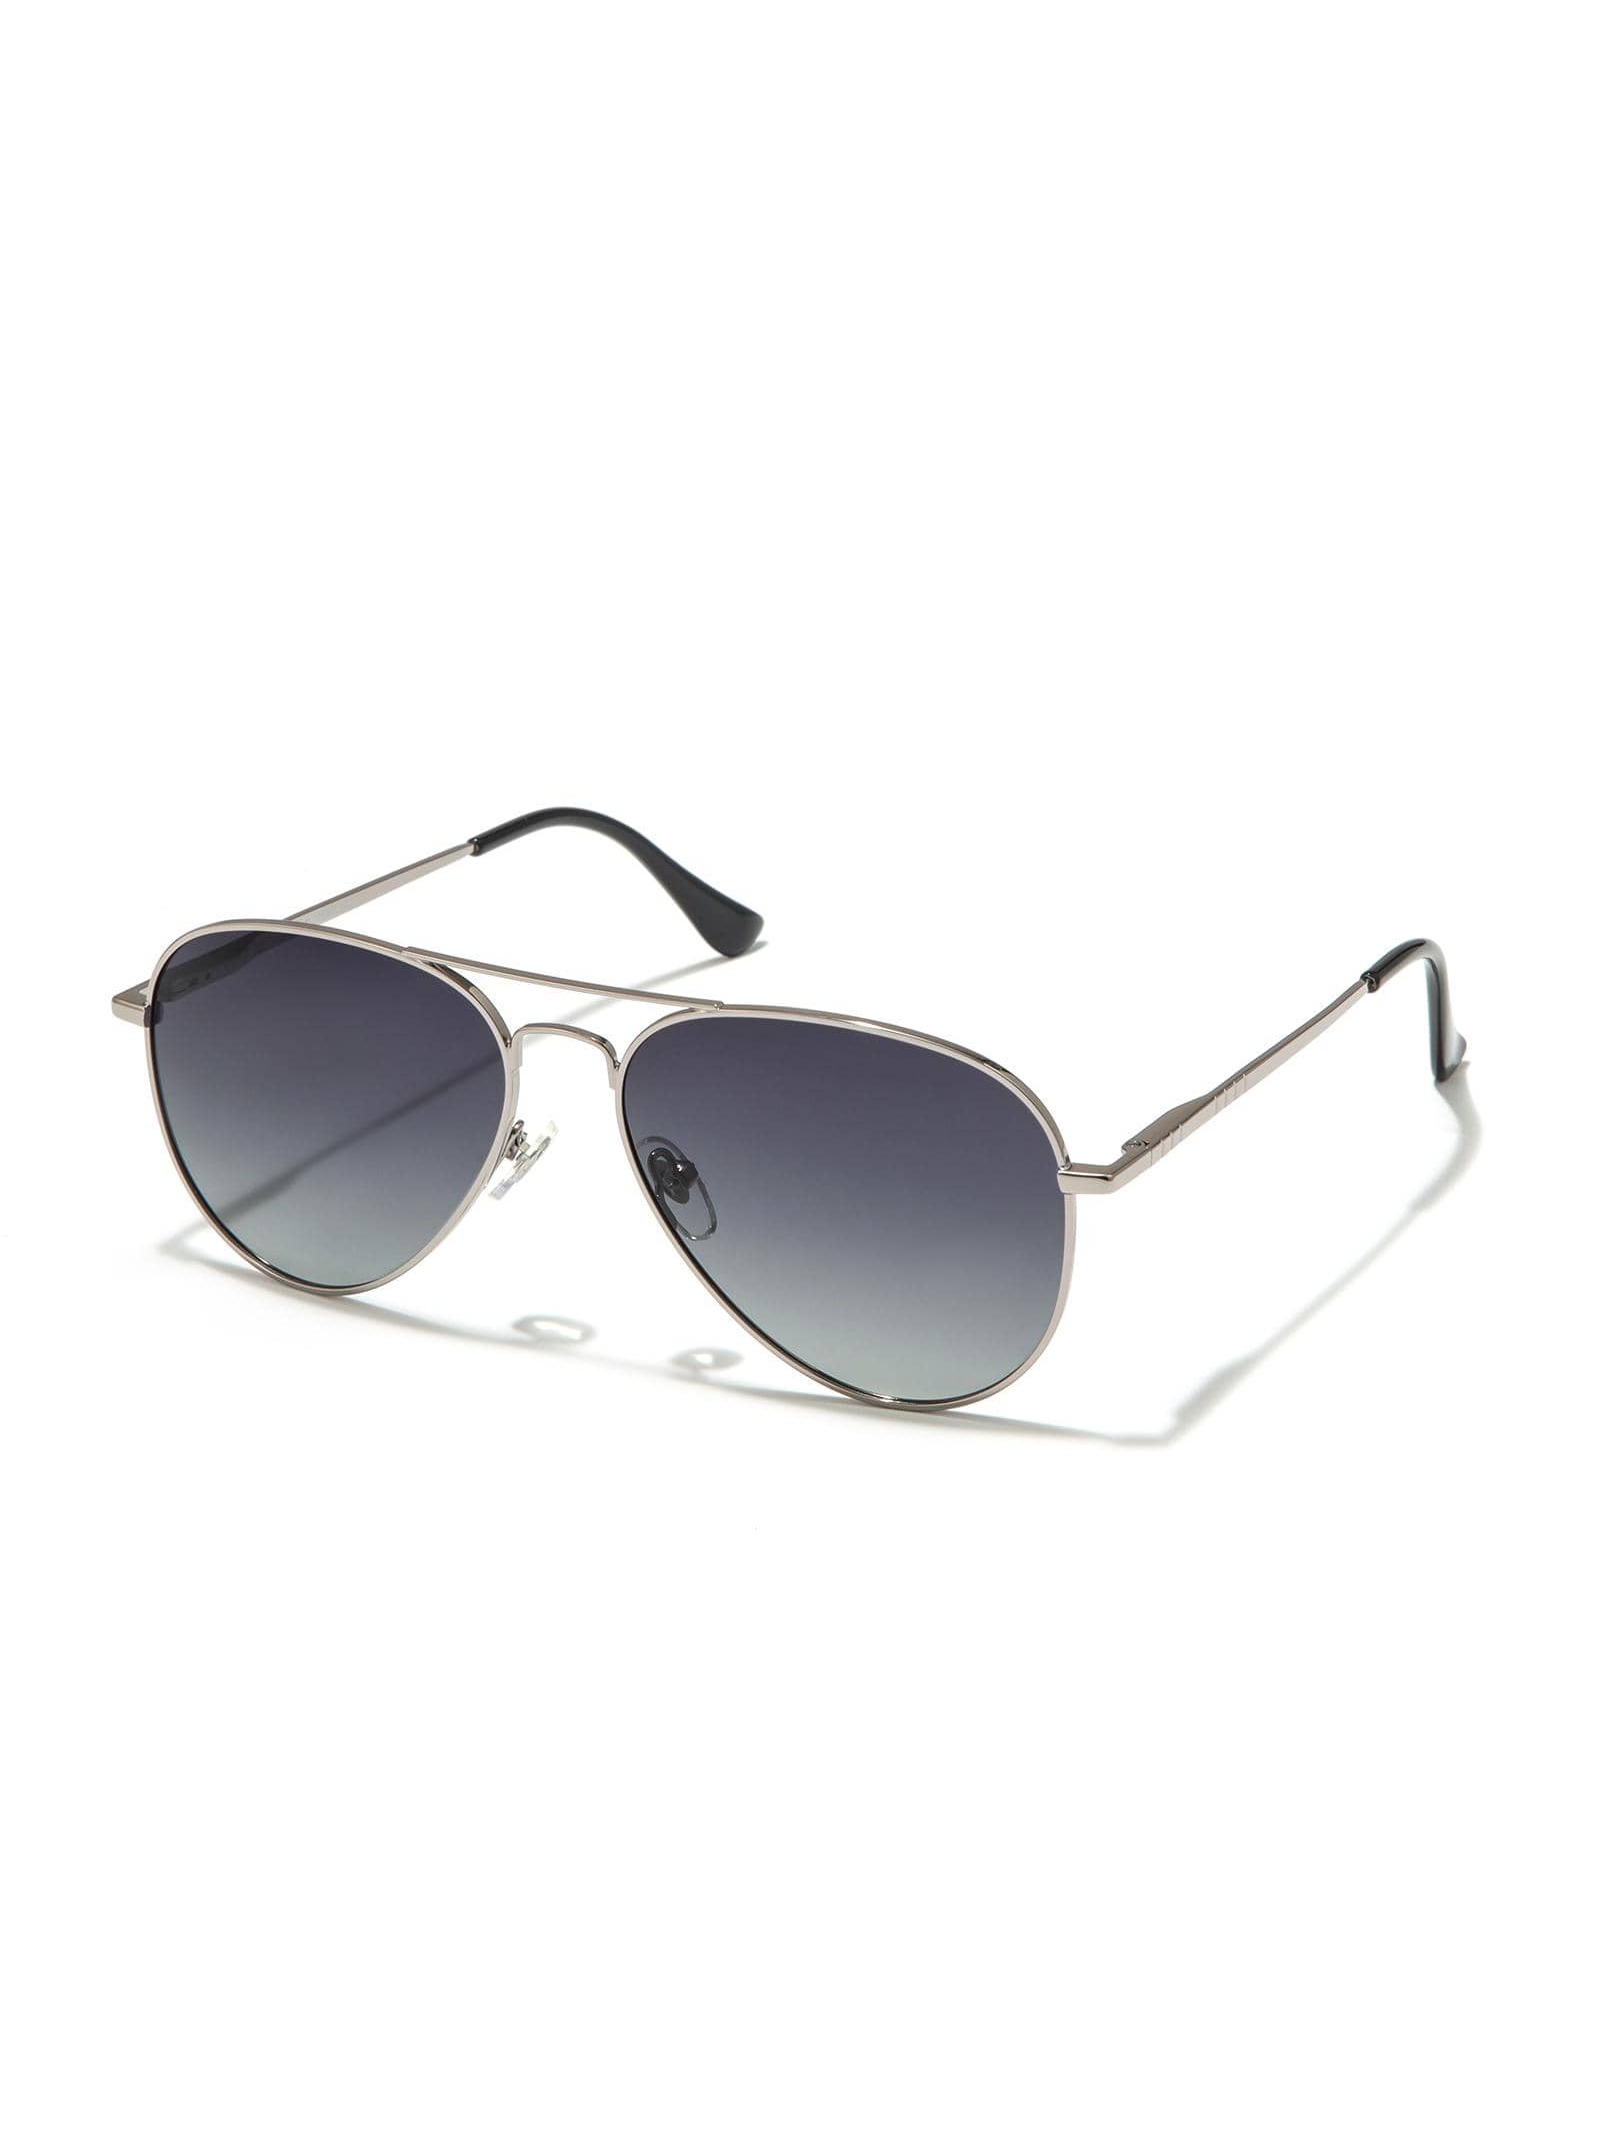 винтажные квадратные солнцезащитные очки авиаторы для мужчин и женщин Солнцезащитные очки-авиаторы Veda Tinda для женщин и мужчин